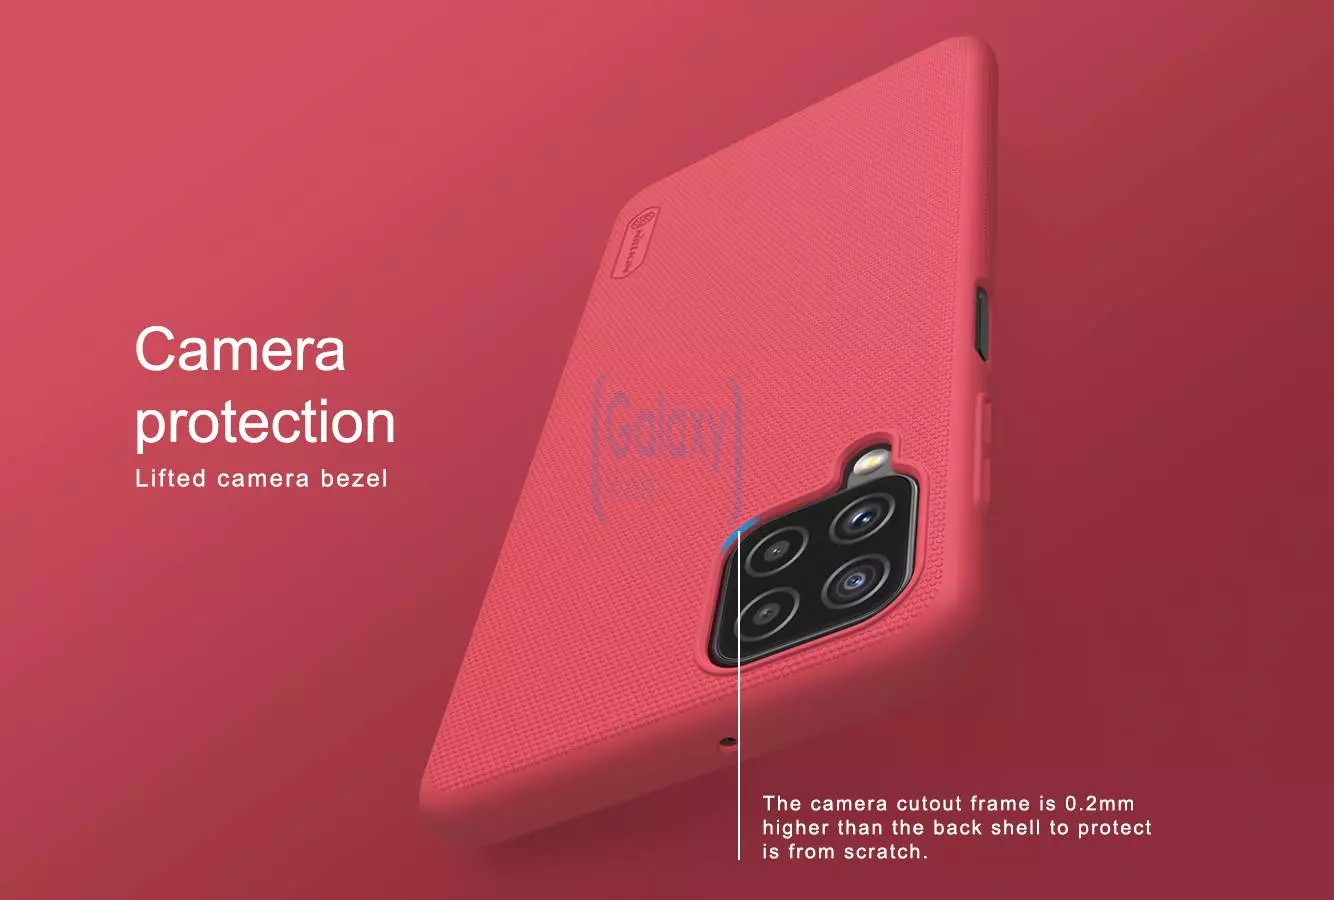 Чехол бампер для Samsung Galaxy A22 Nillkin Super Frosted Shield Red (Красный)